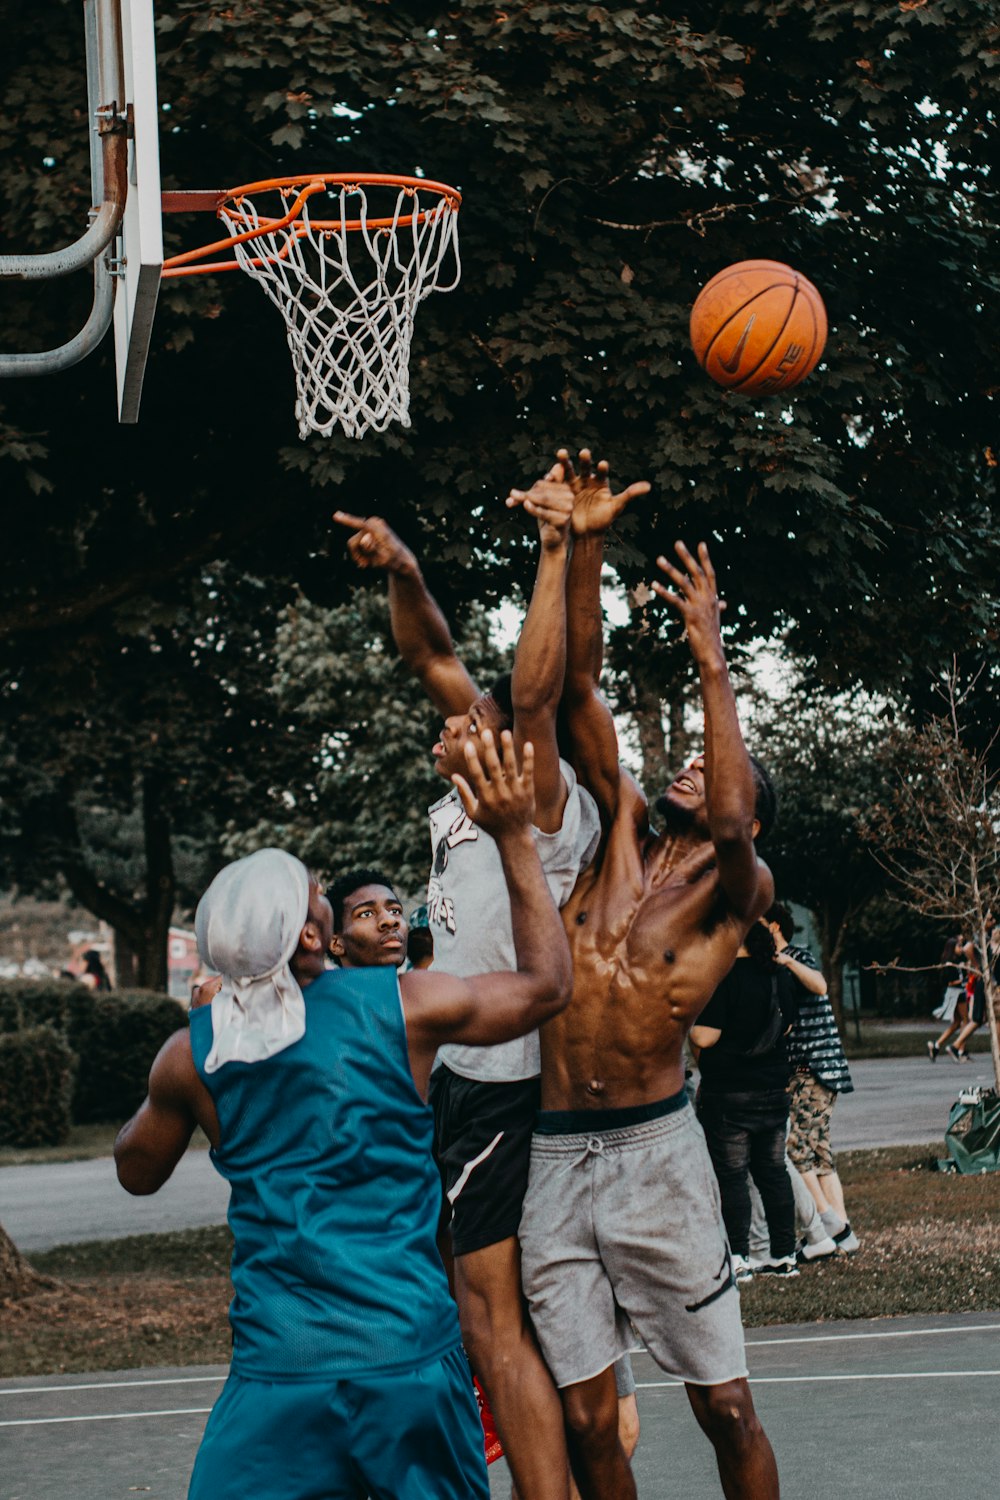 Männer spielen Basketball